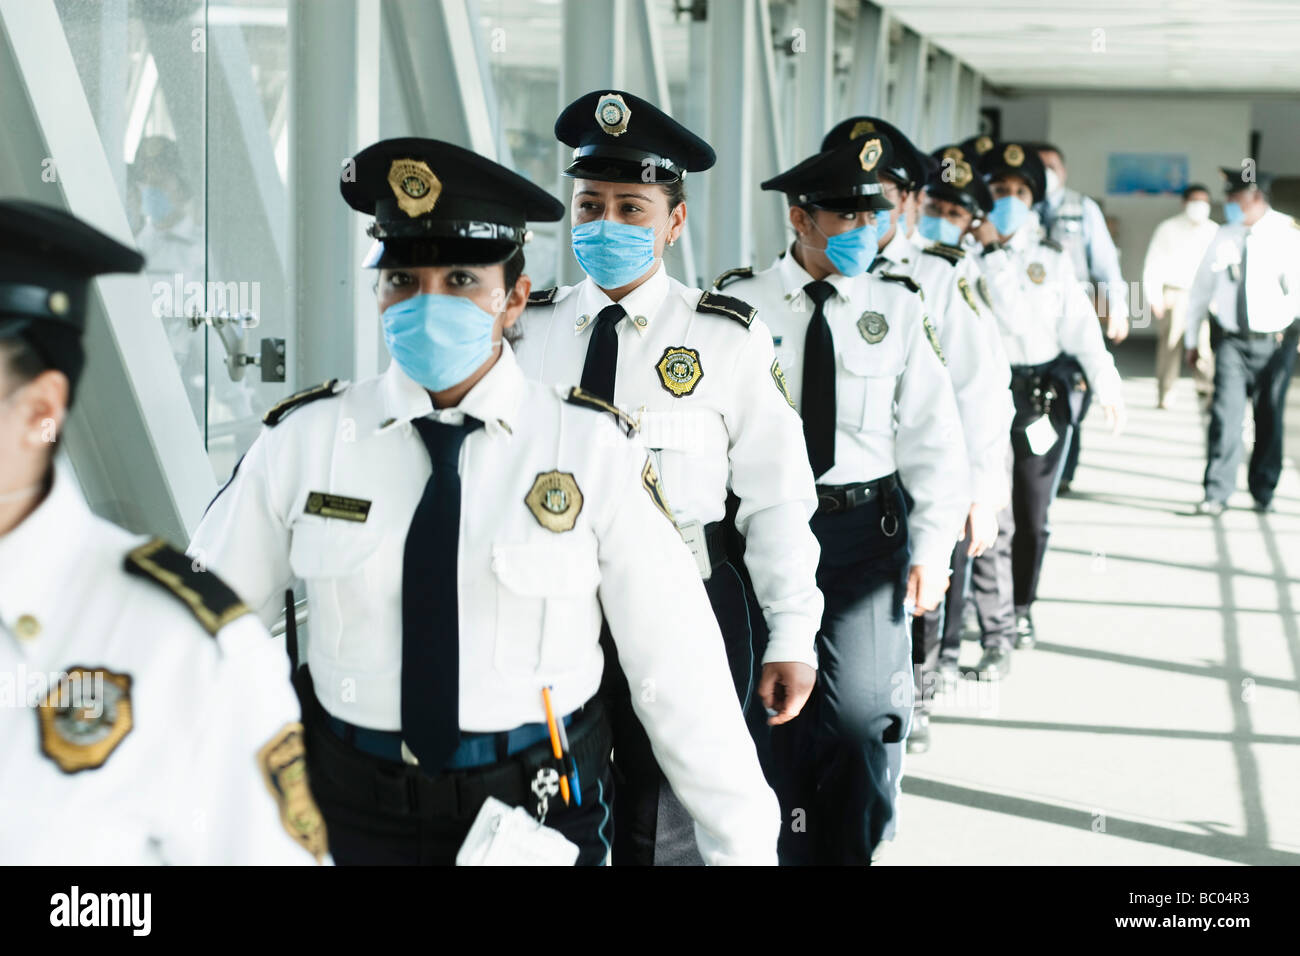 Polizisten zu Fuß am Flughafen blaue Masken tragen. Mexiko-Stadt, DF, Mexiko. Stockfoto